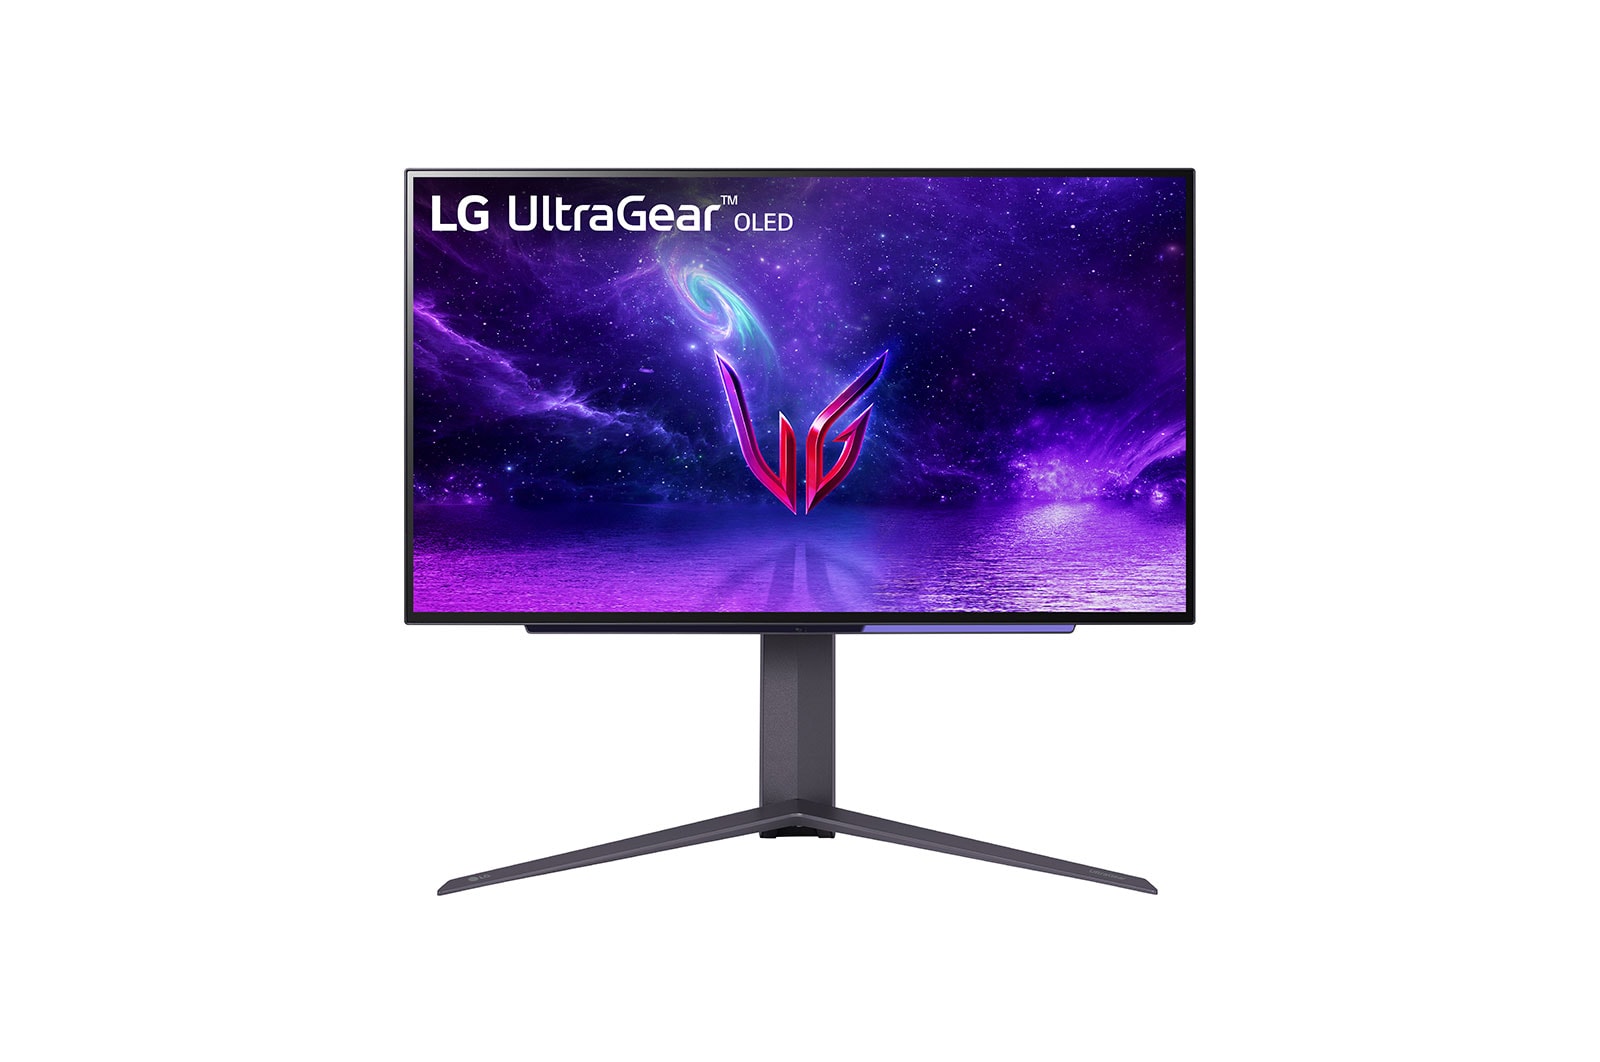 Immagine pubblicata in relazione al seguente contenuto: LG lancia il gaming monitor UltraGear OLED 27-inch con refresh rate fino a 240Hz | Nome immagine: news33884_LG-UltraGear-OLED_27-inch_1.jpg